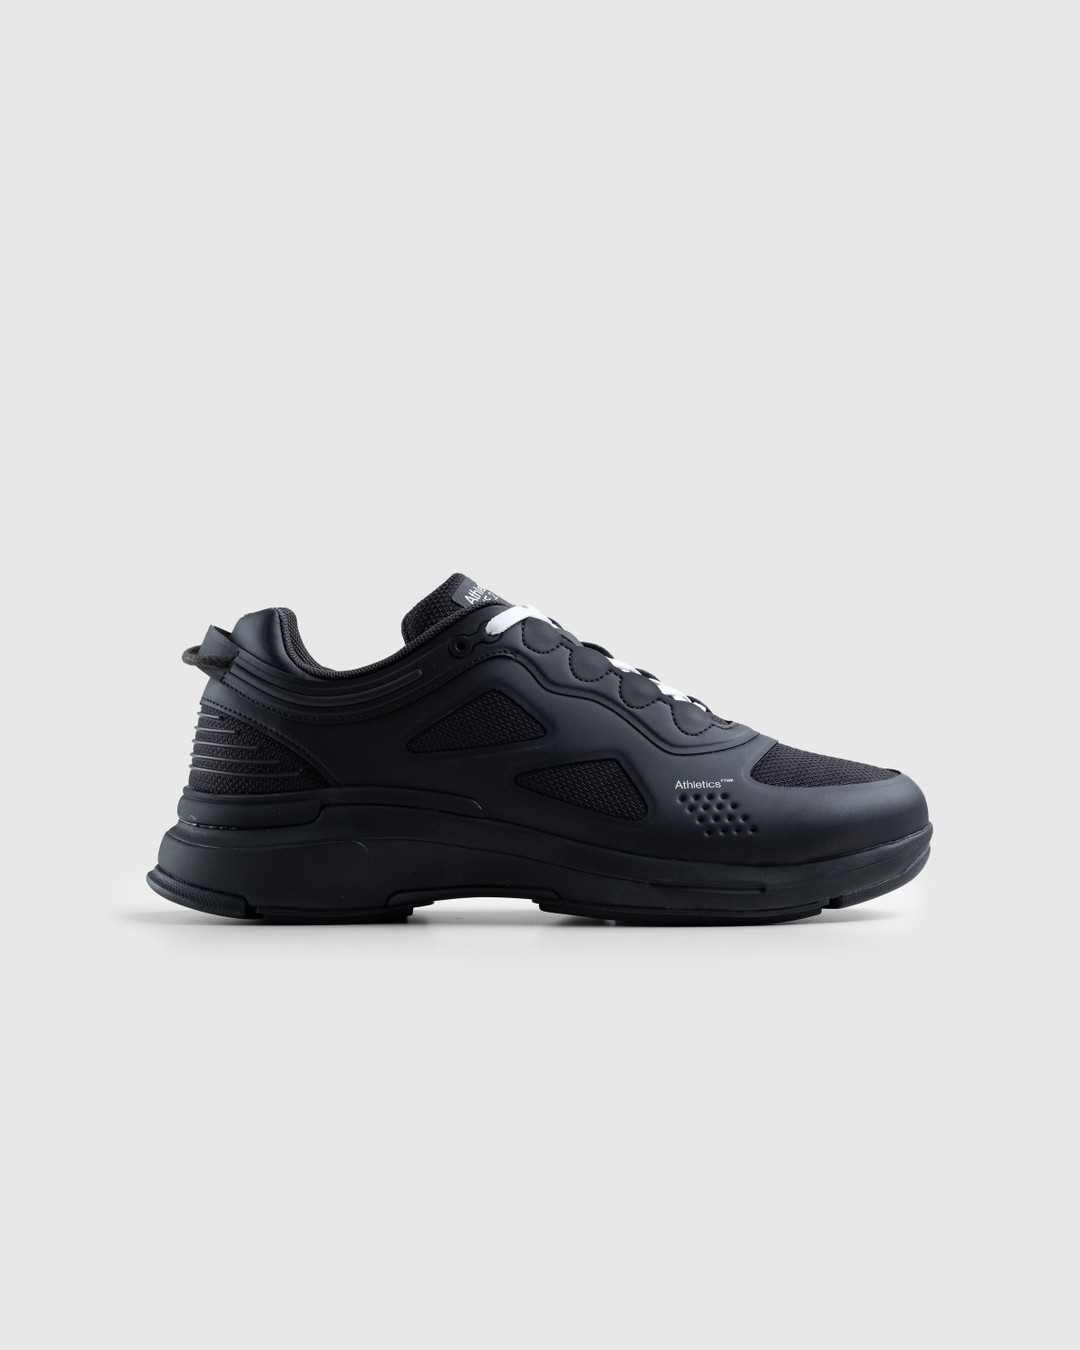 Athletics Footwear – One.2 Black - Low Top Sneakers - Black - Image 1